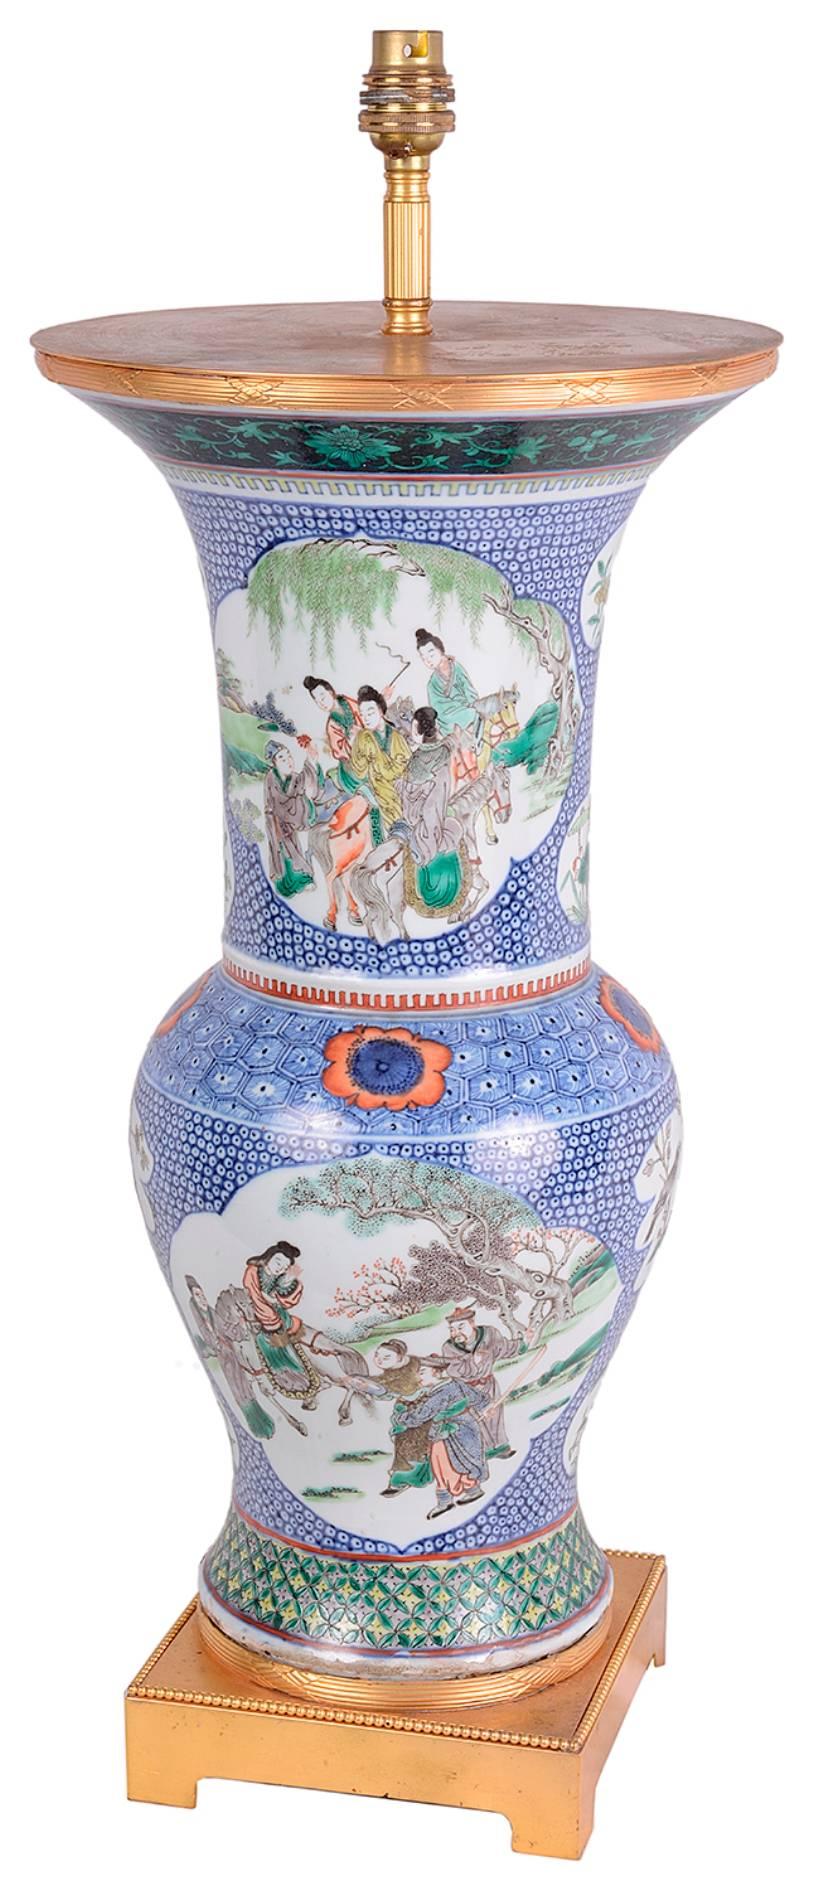 Vase de bonne qualité en porcelaine de la famille verte chinoise du XIXe siècle, représentant des scènes classiques d'hommes et de femmes dans des jardins. Montures en bronze doré en haut et en bas.
Transformé en lampe.